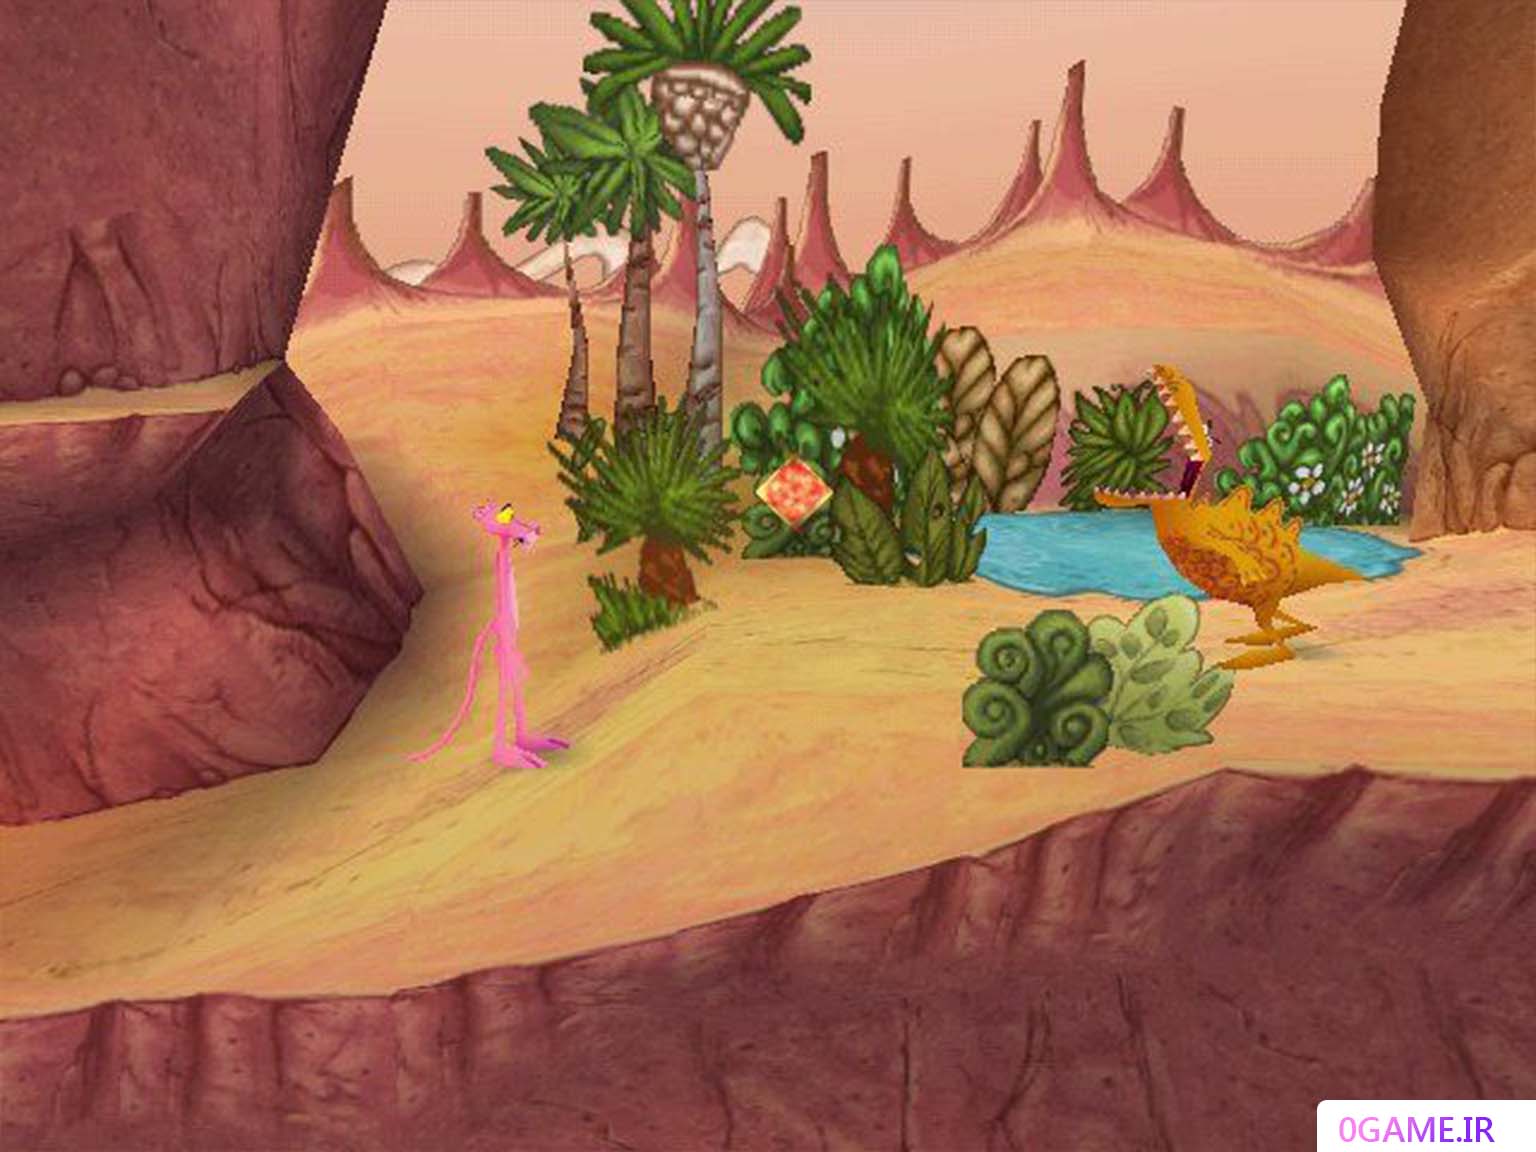 دانلود بازی پلنگ صورتی (Pink Panther) نسخه کامل برای کامپیوتر